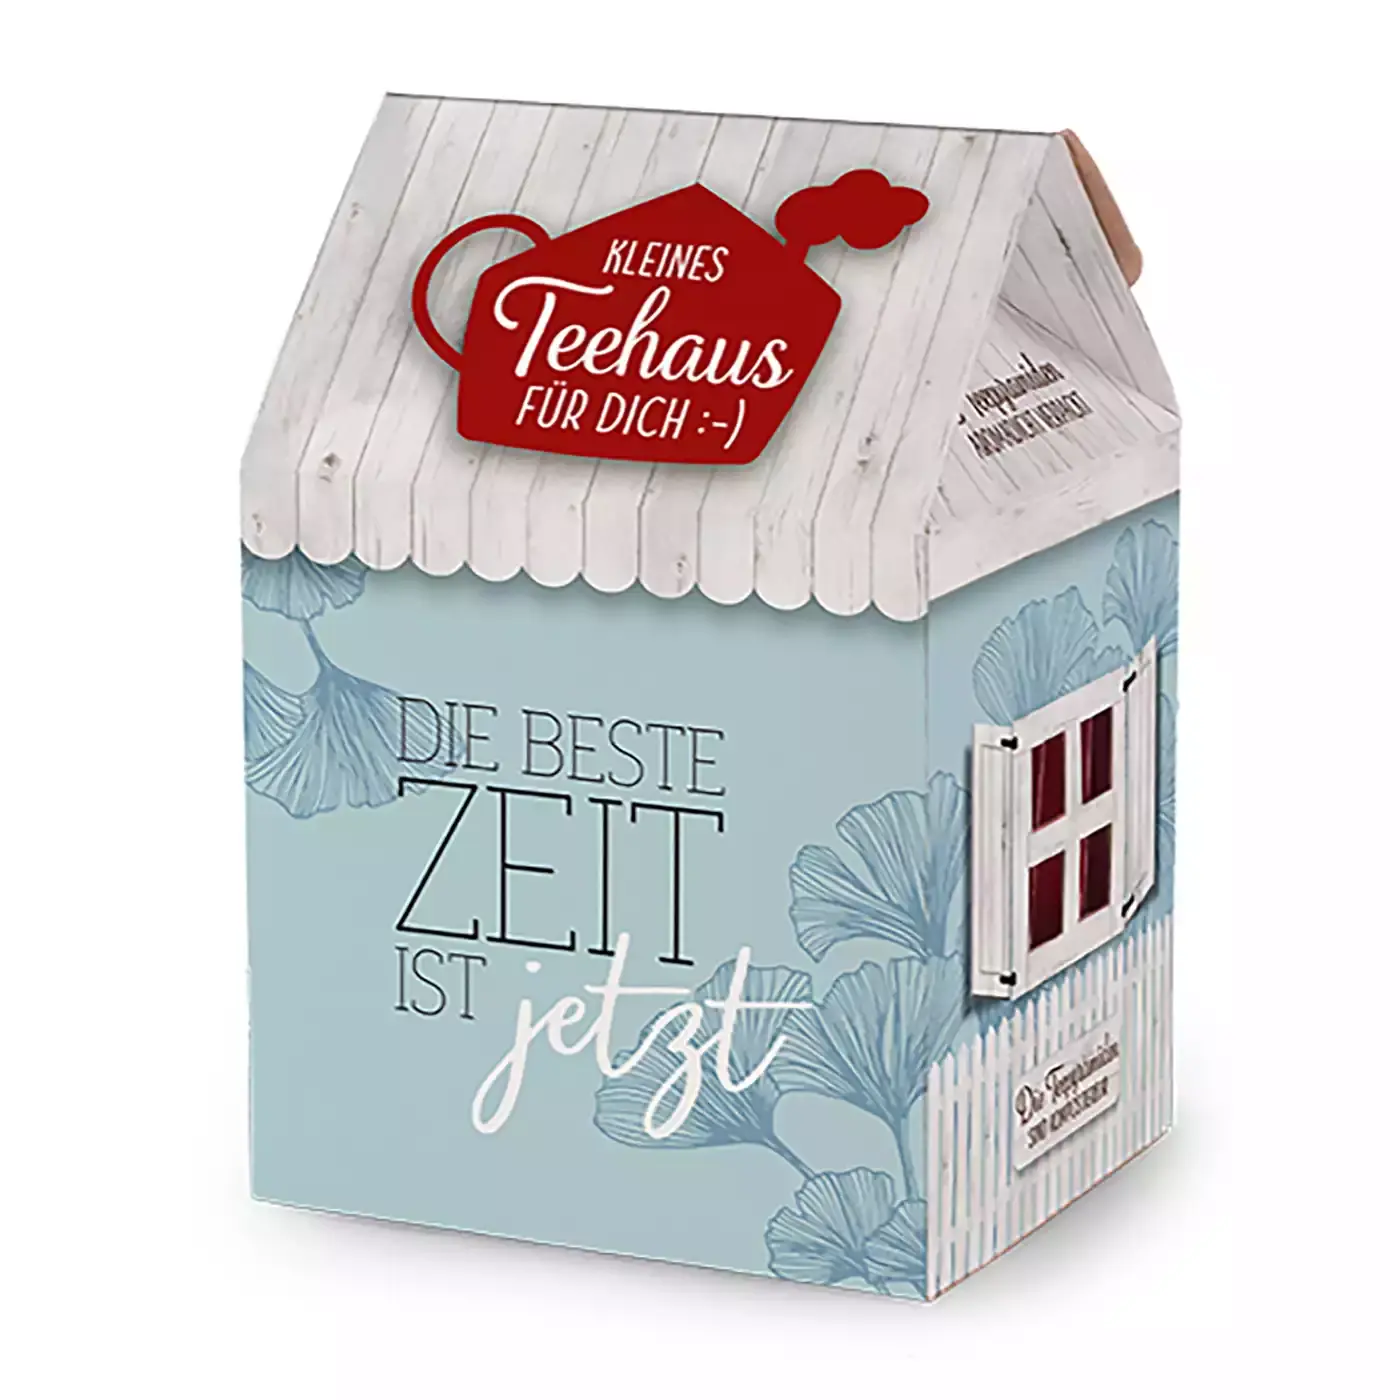 Teehaus "Beste Zeit" GeschenkFürDich 2000578467432 1